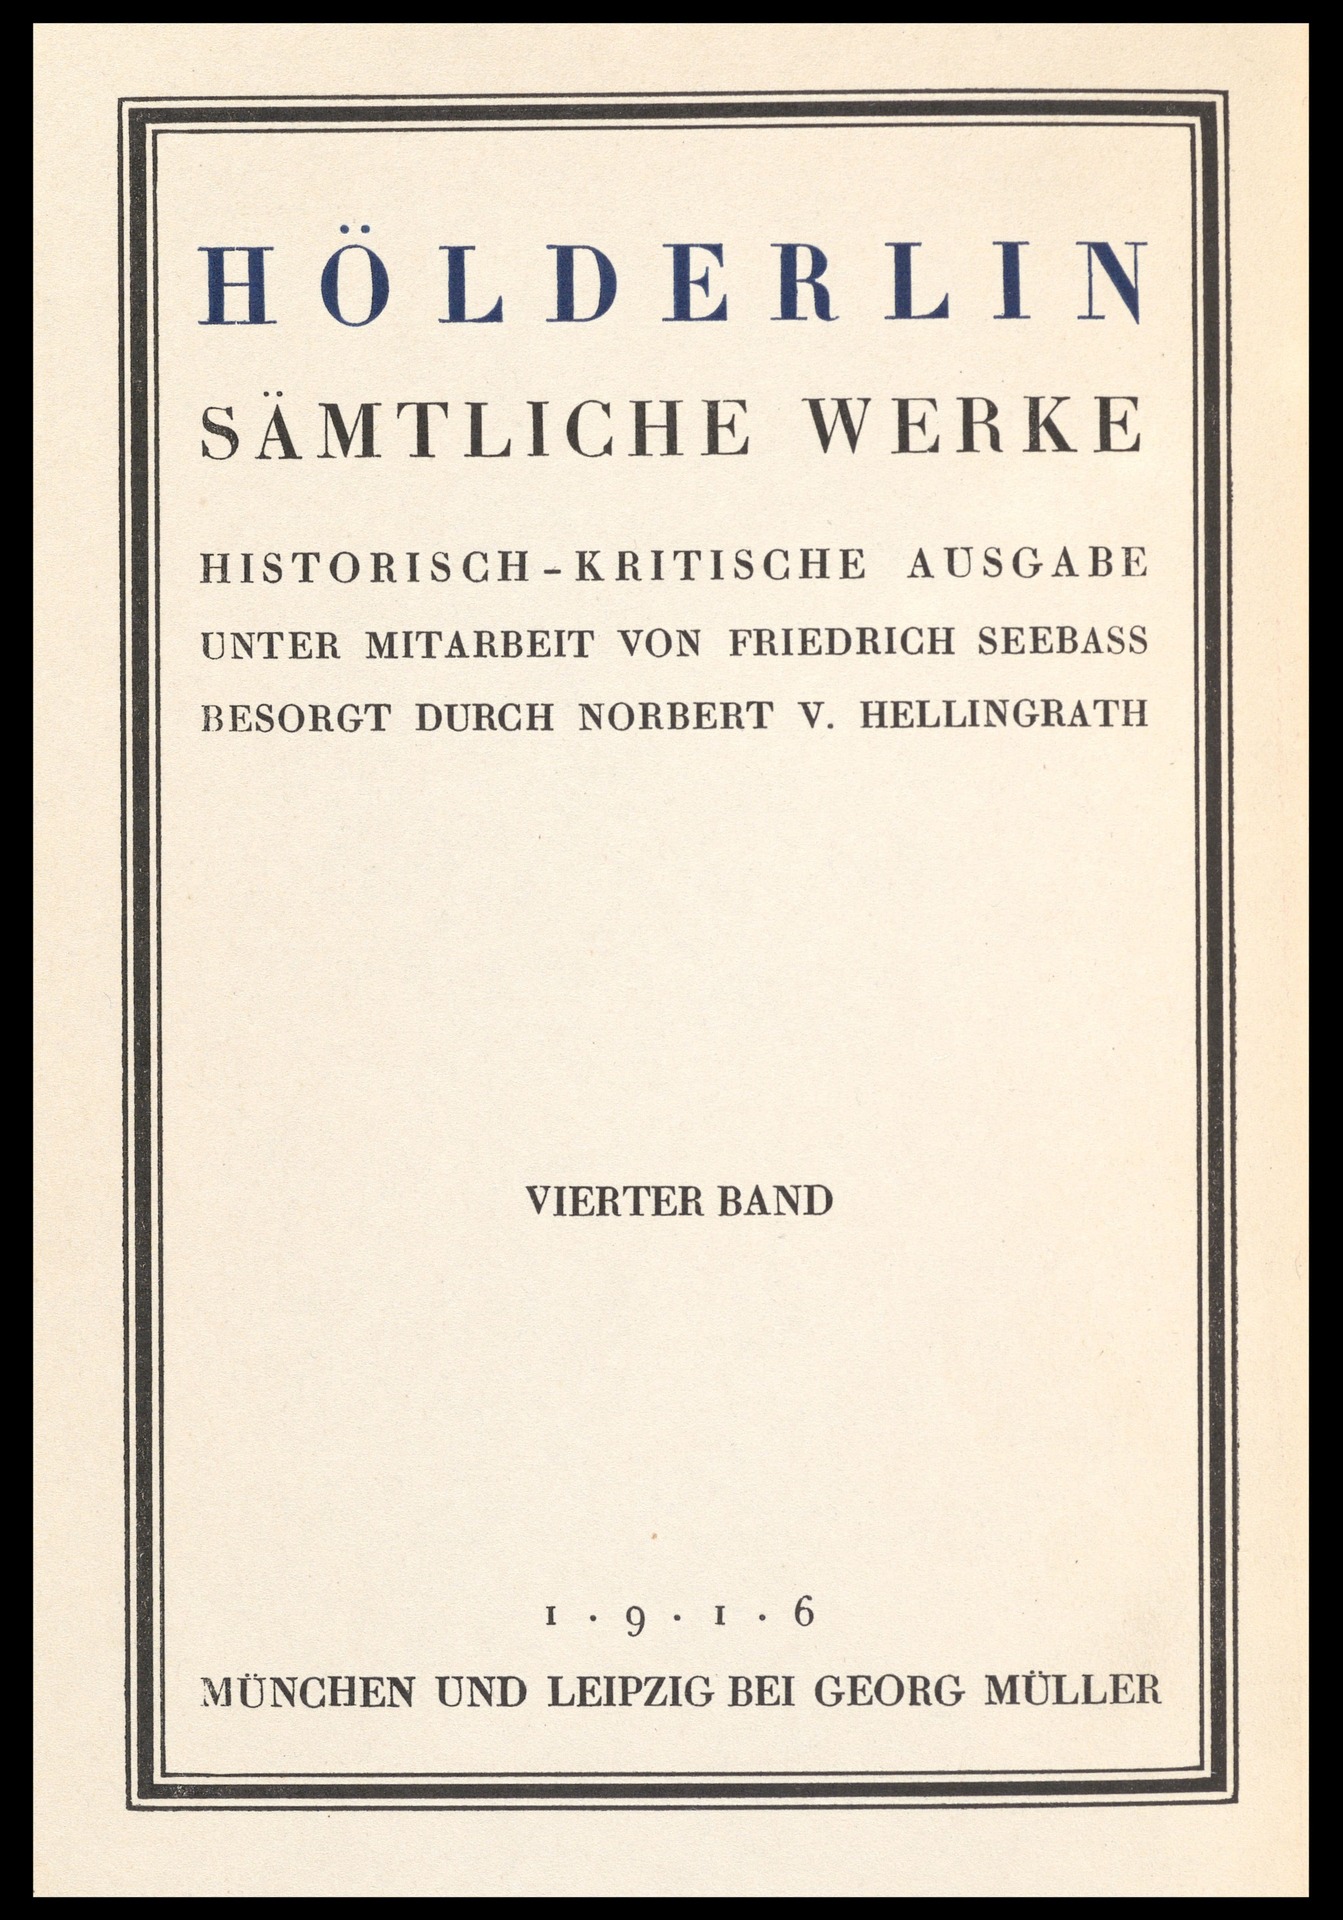 35a_Sämtliche Werke, Titelblatt 1 HA 1951.158.jpg